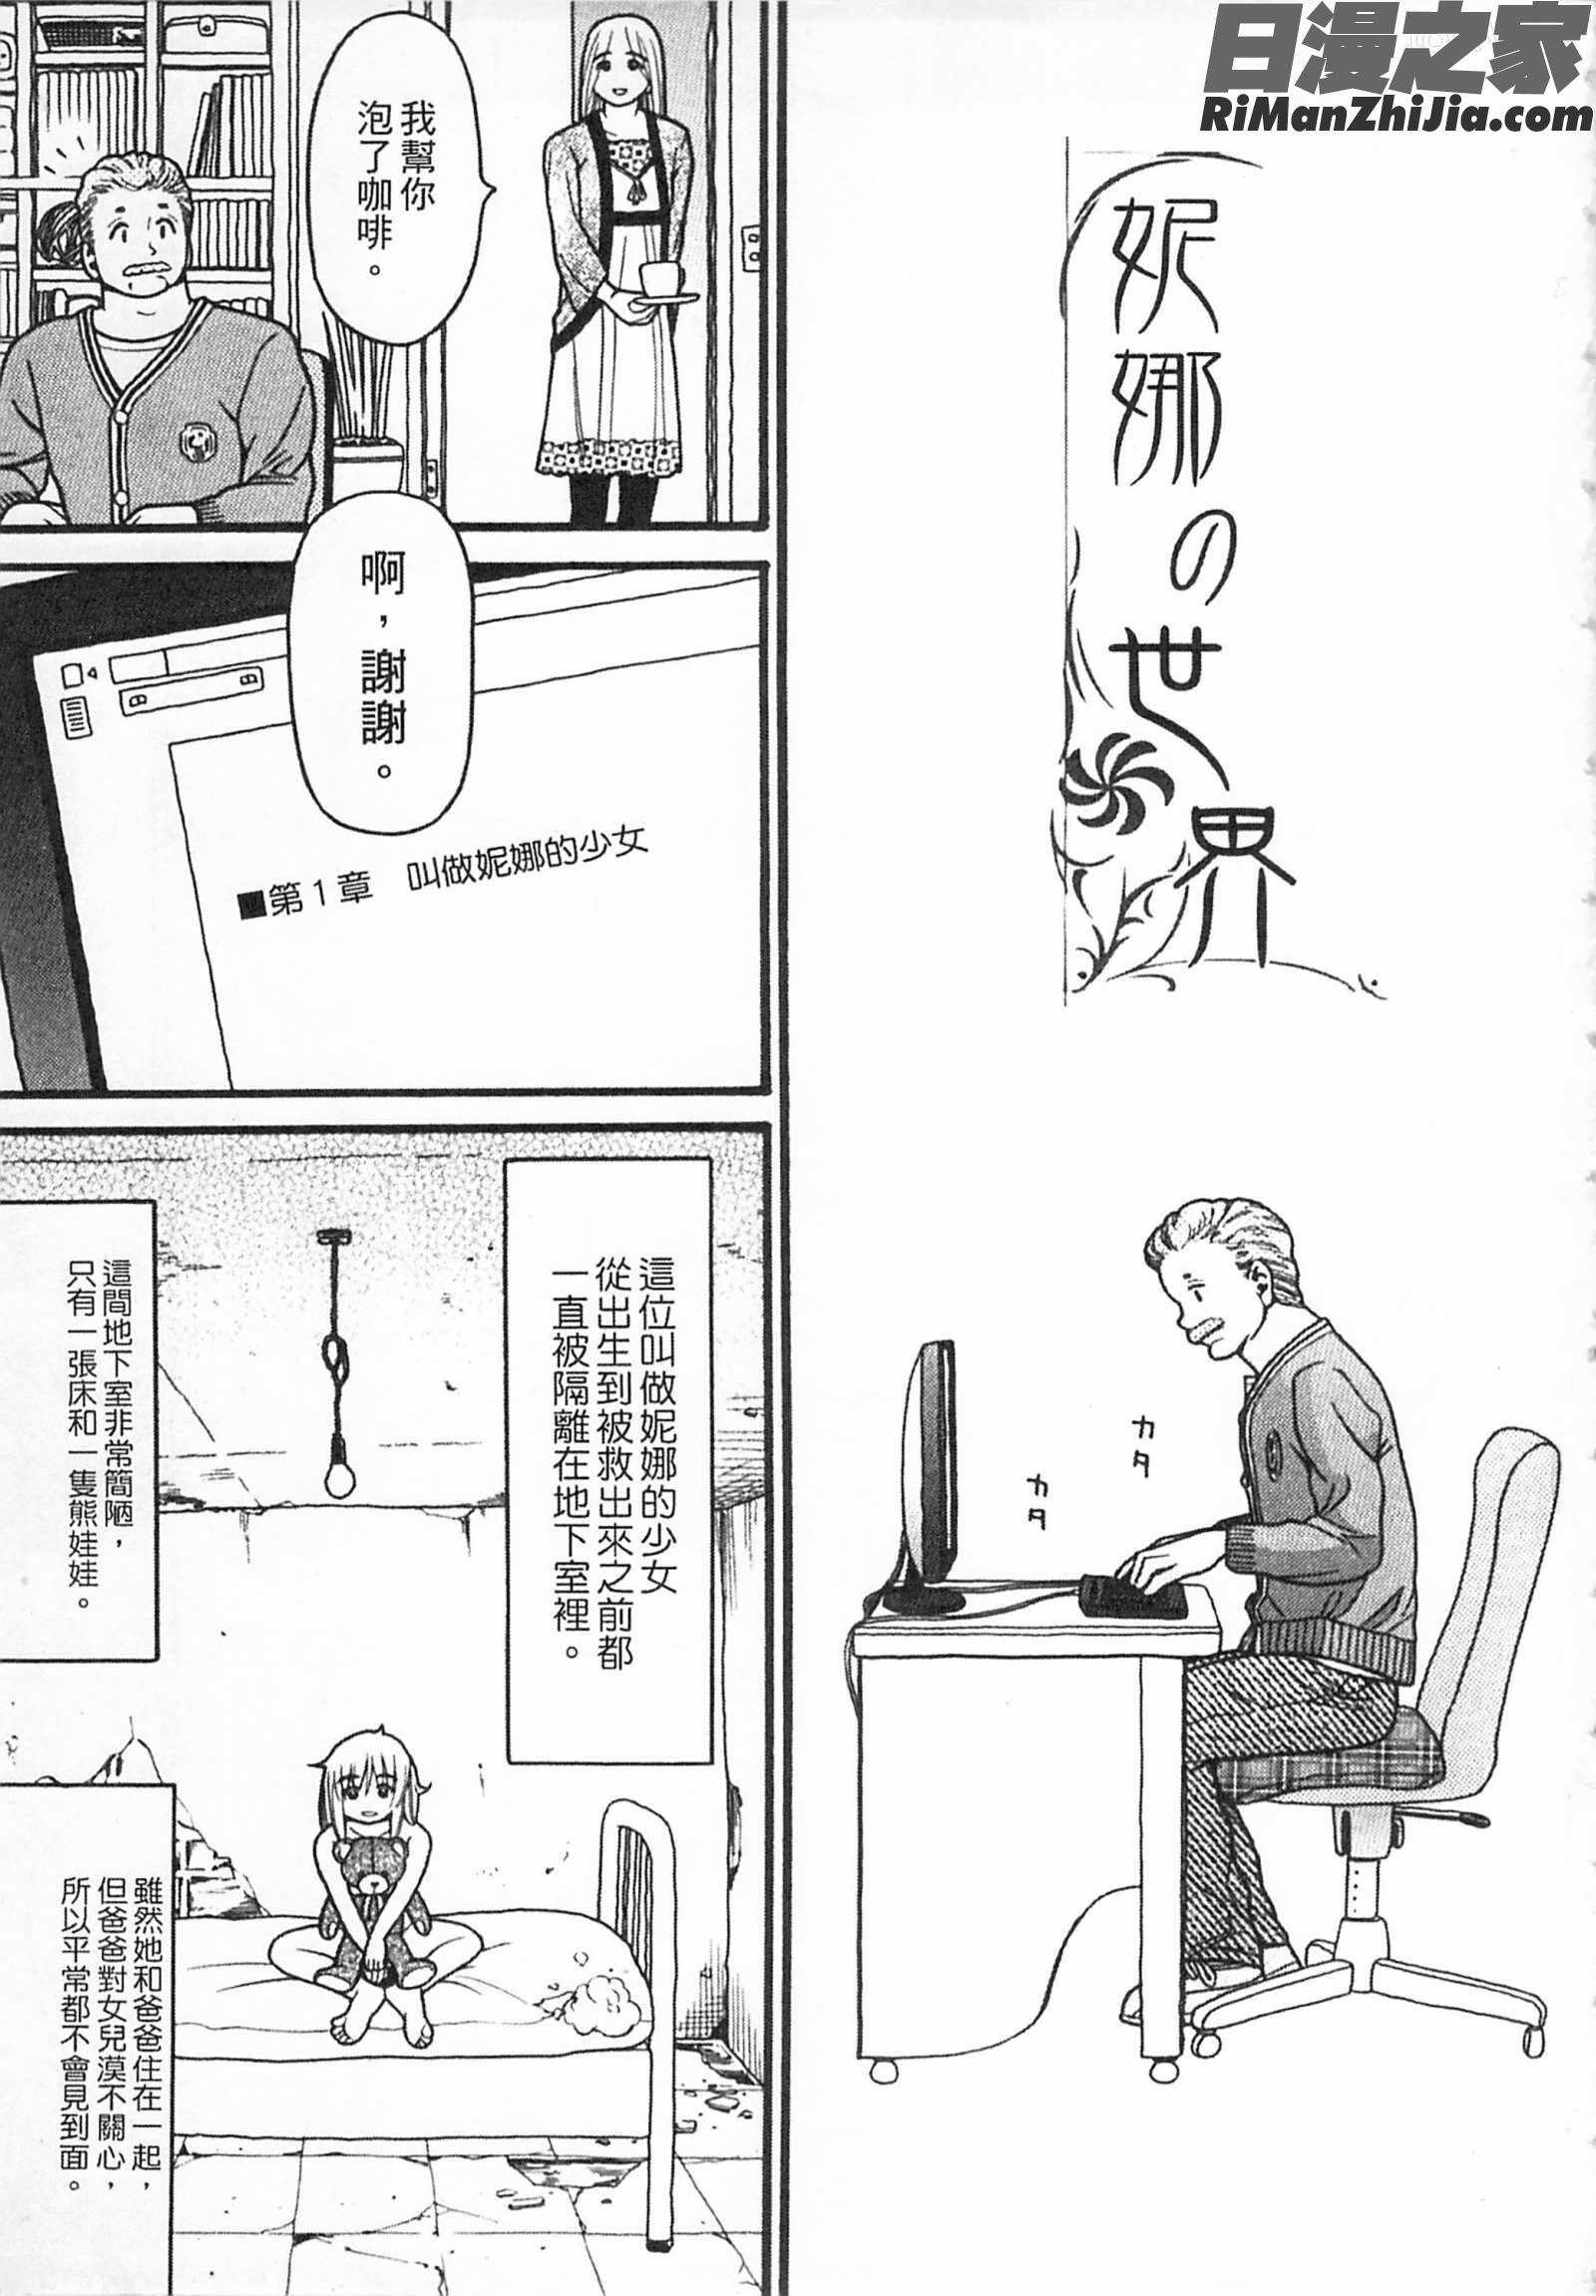 しょとうぶ初等部漫画 免费阅读 整部漫画 10.jpg